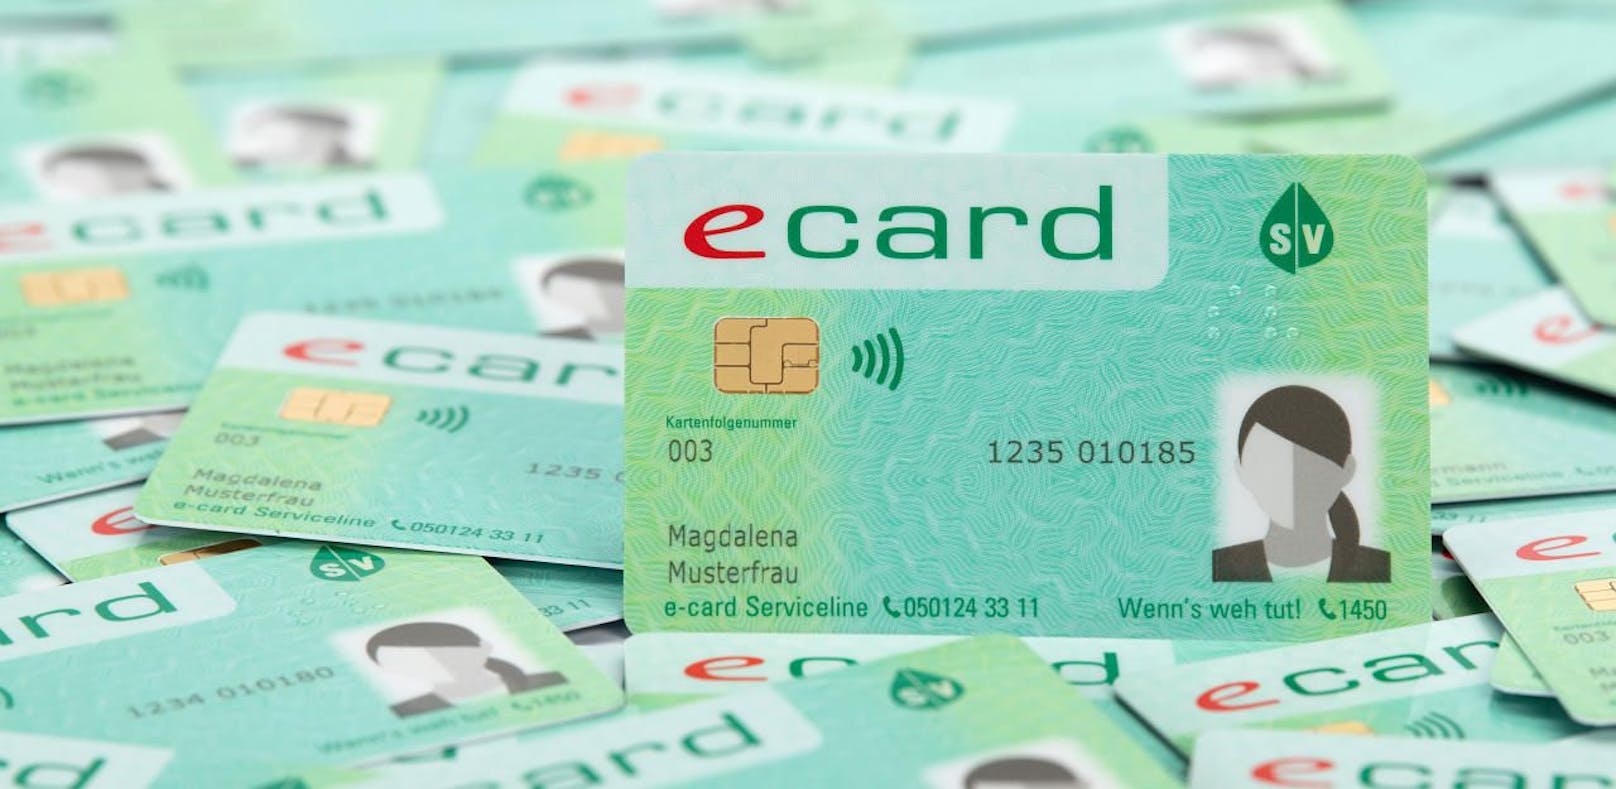 Die neue e-card mit Foto: Künftig ohne Bürgerkarte-Funktion